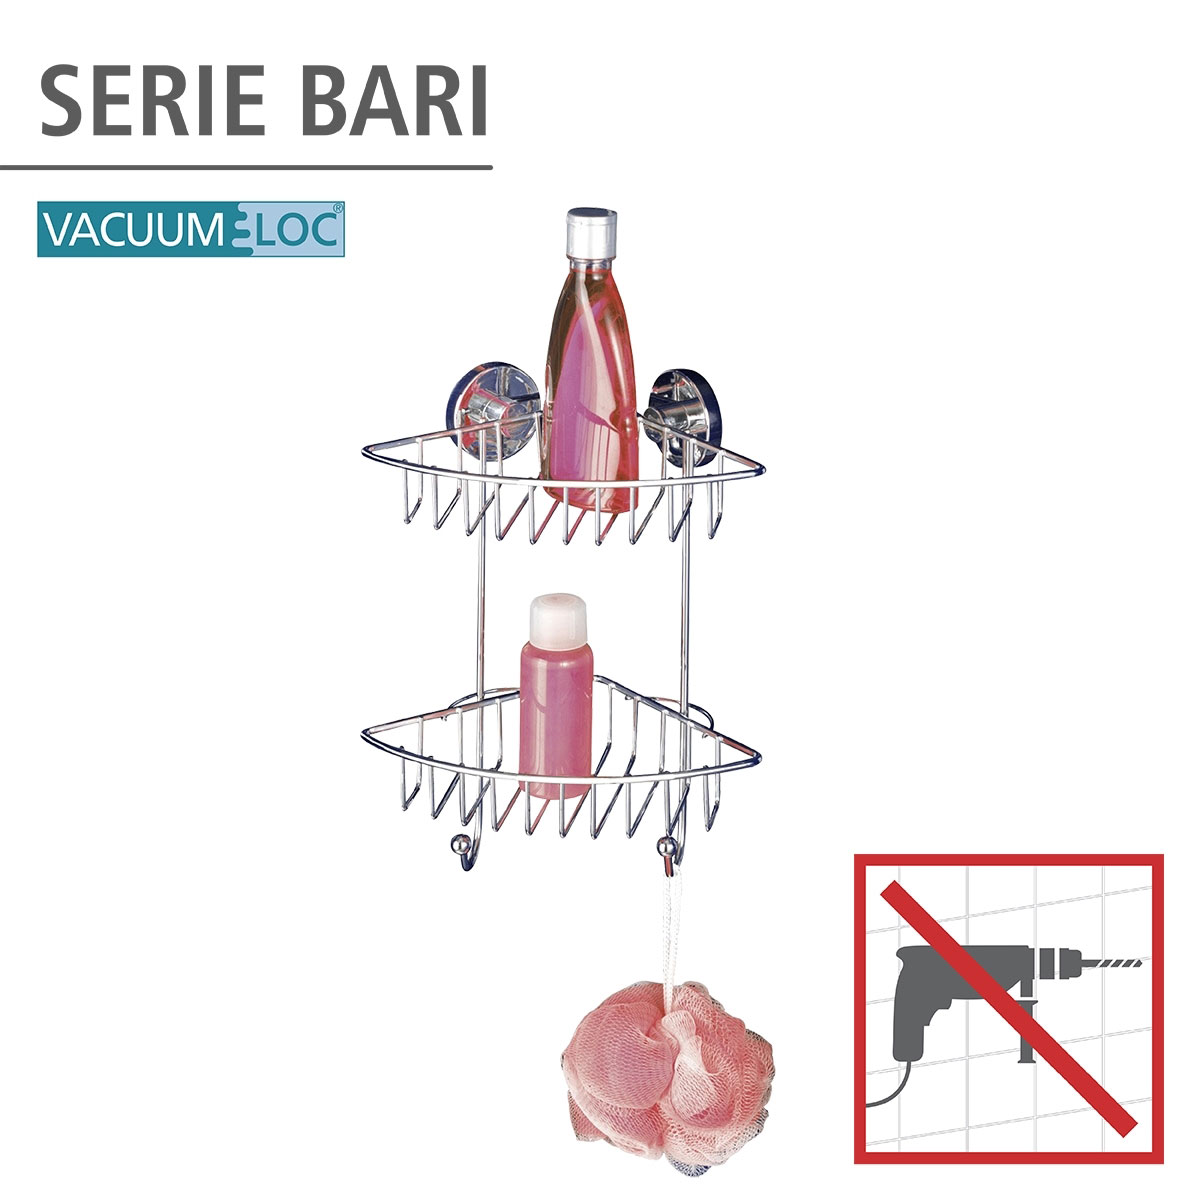 Wenko Vacuum-Loc 2 | Etagen Eckregal 895058 Bari